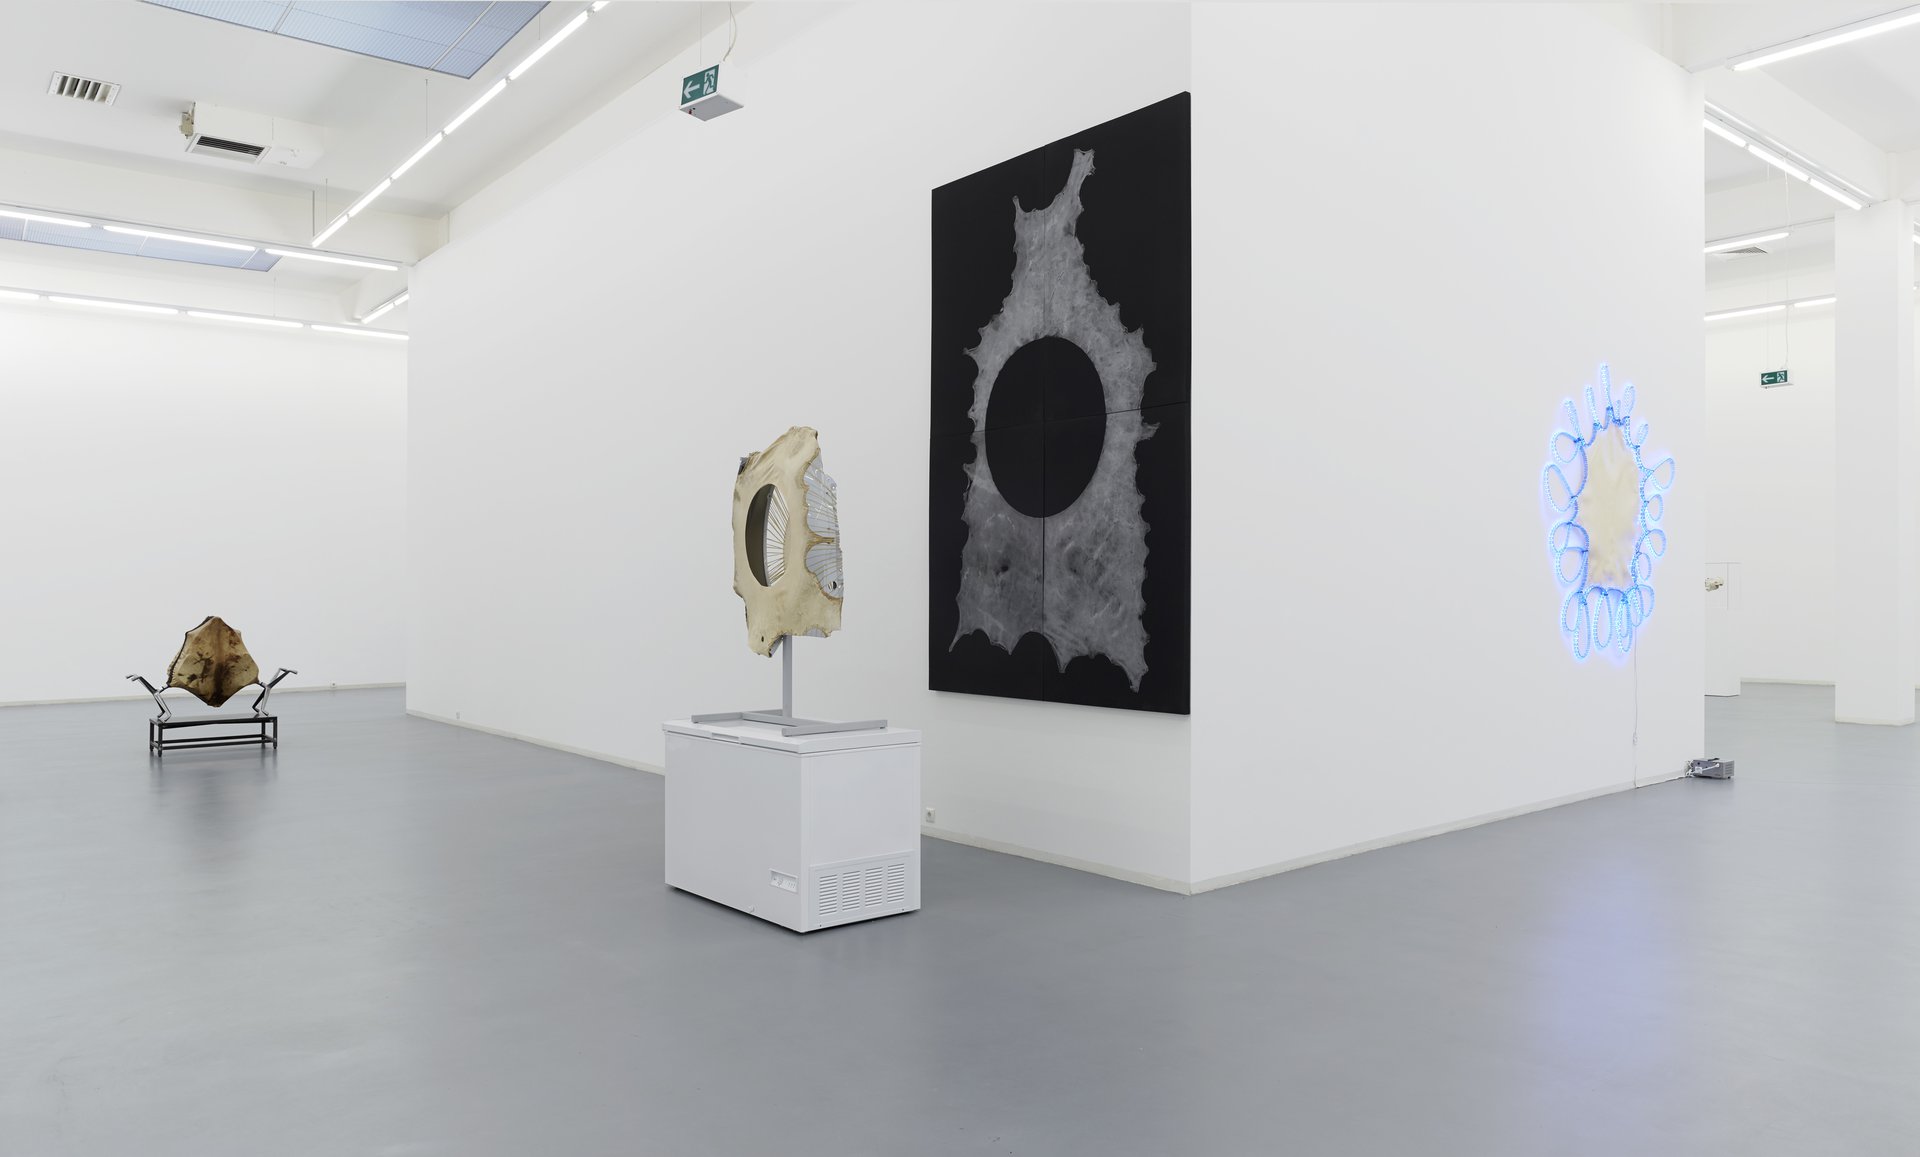 Brian Jungen, installation view, 2013, Bonner Kunstverein. Photo: Simon Vogel